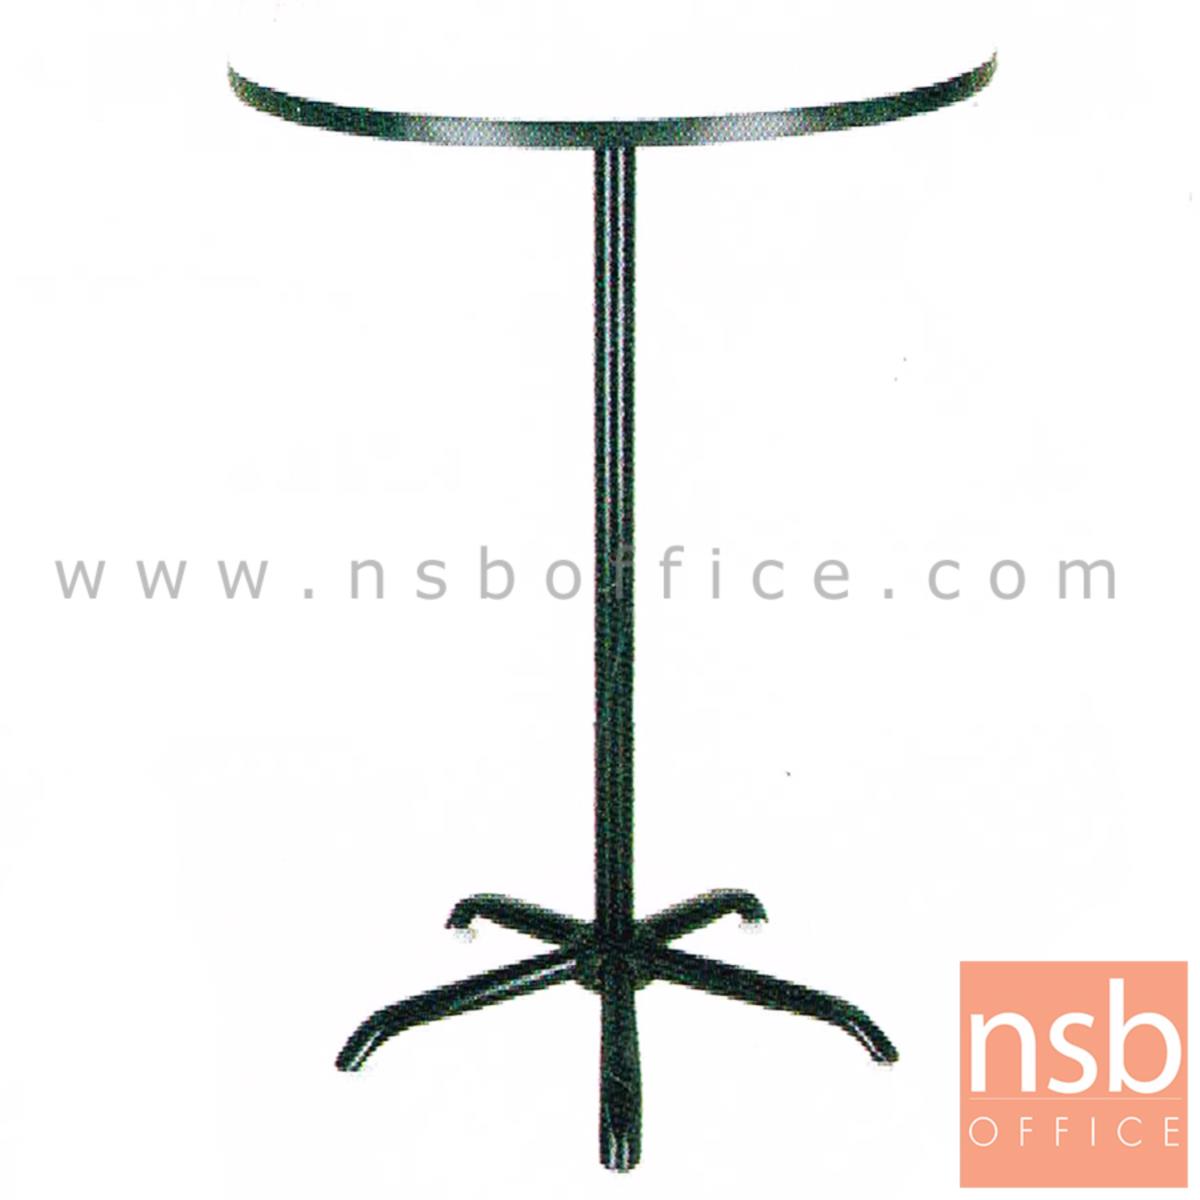 A07A081:โต๊ะคอฟฟี่ช็อป หน้าโฟเมก้า รุ่น Swindon (สวินดัน) ขนาด 75Di 110H cm. โครงขาเหล็ก 5 แฉกสีดำ